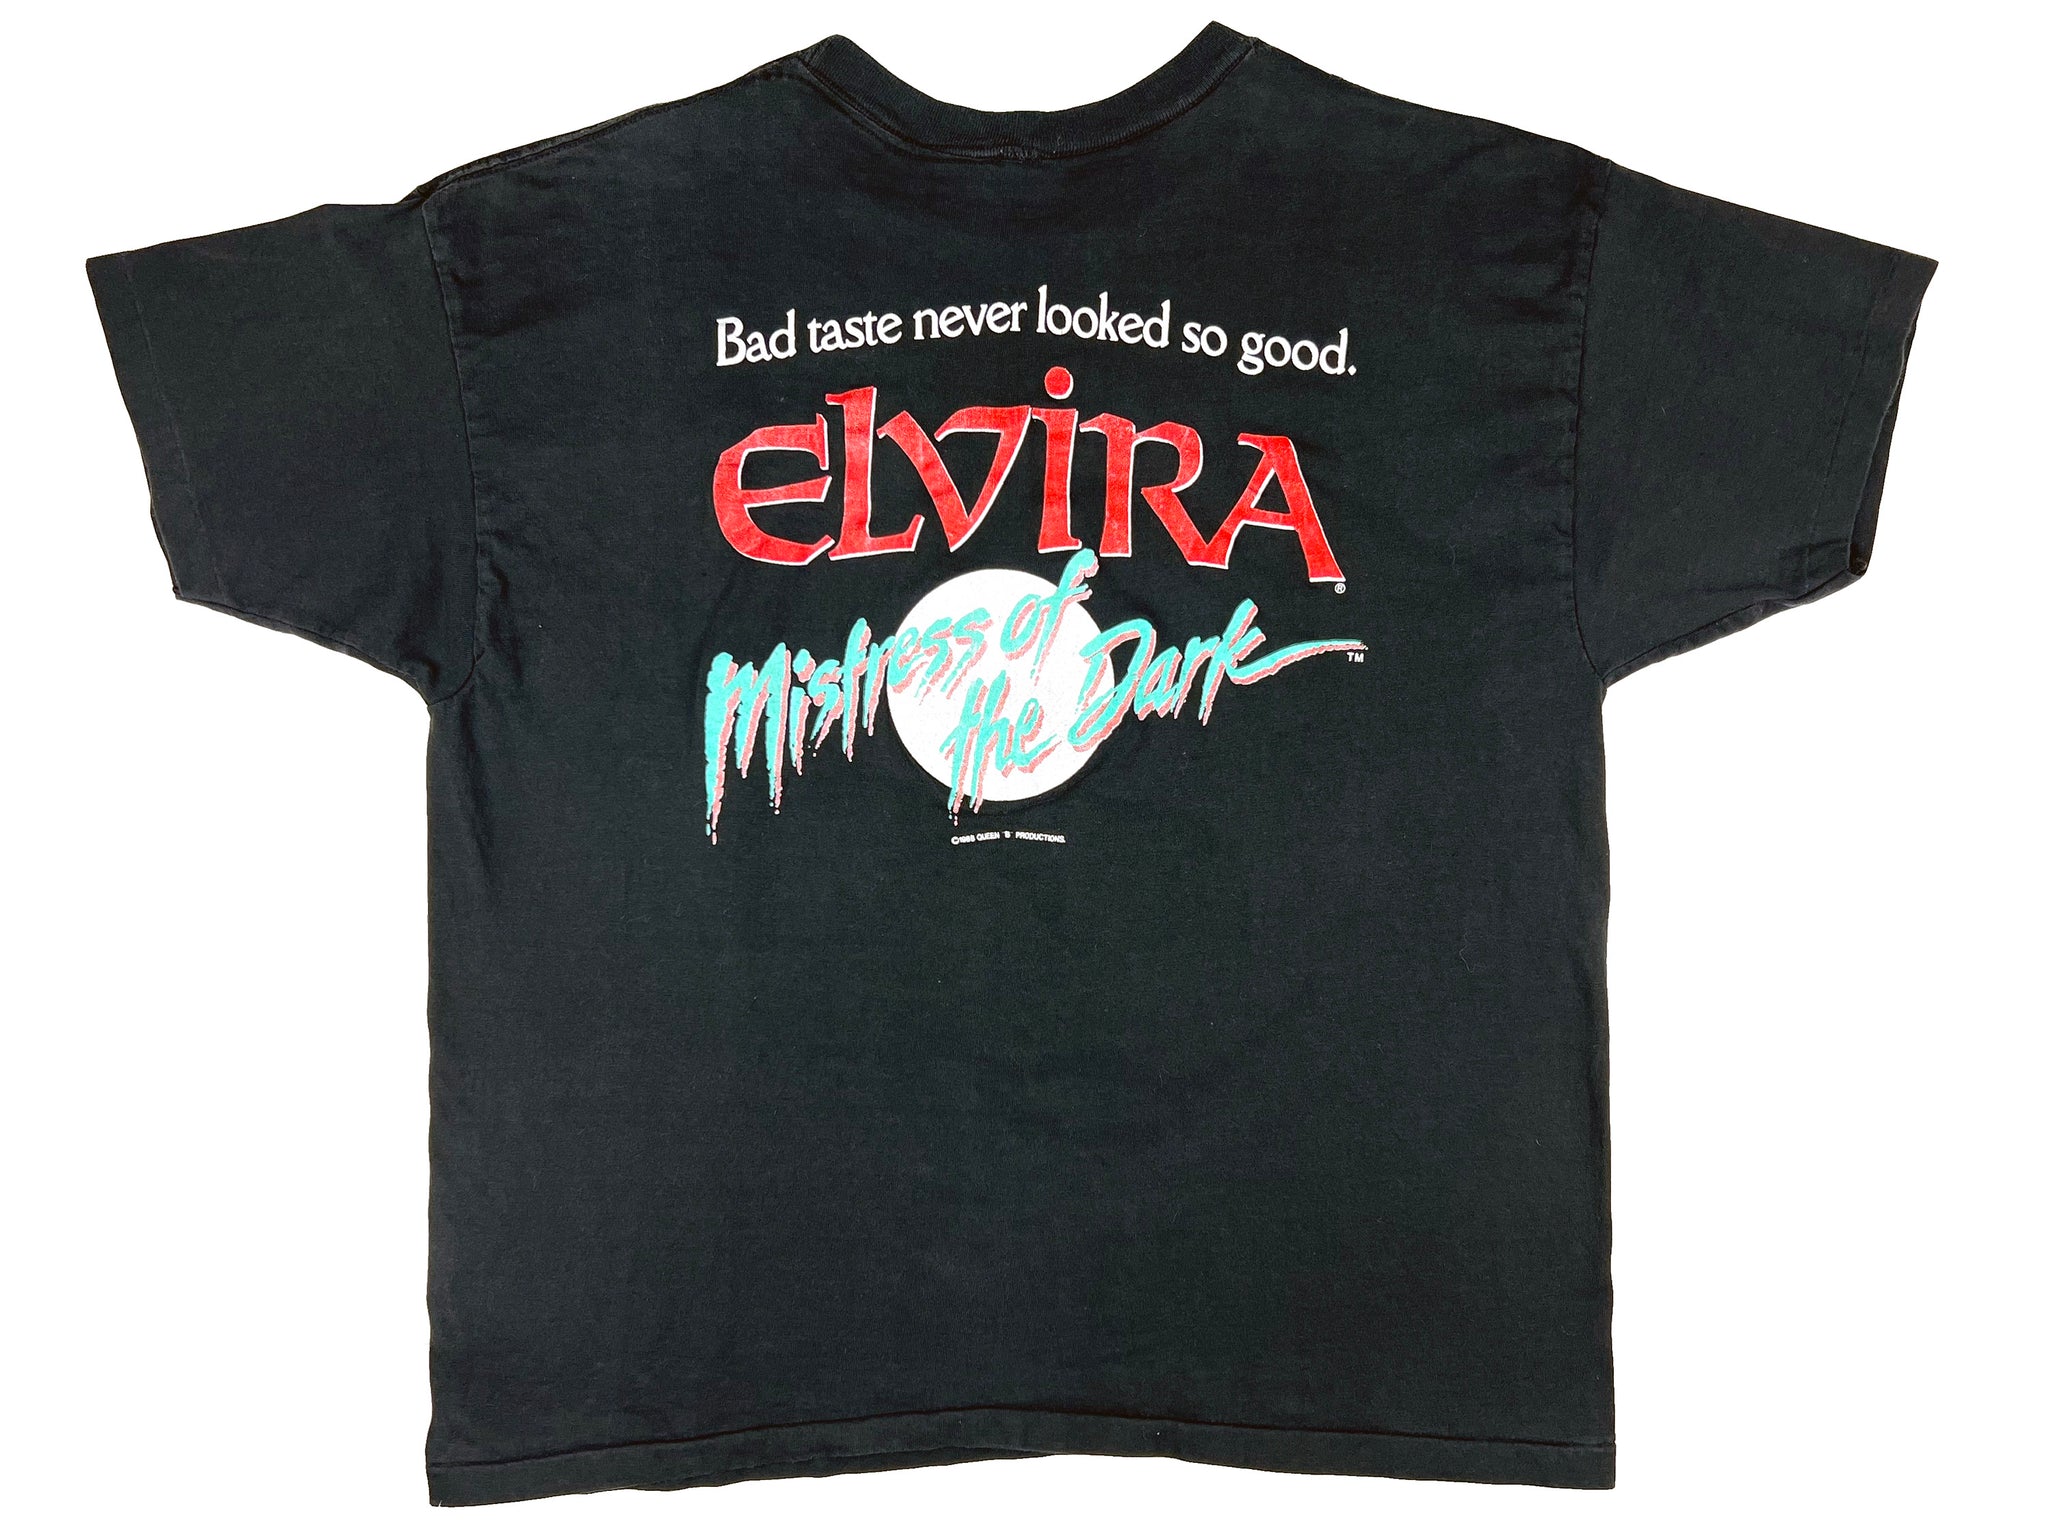 Elvira Mistress of the Dark T-Shirt